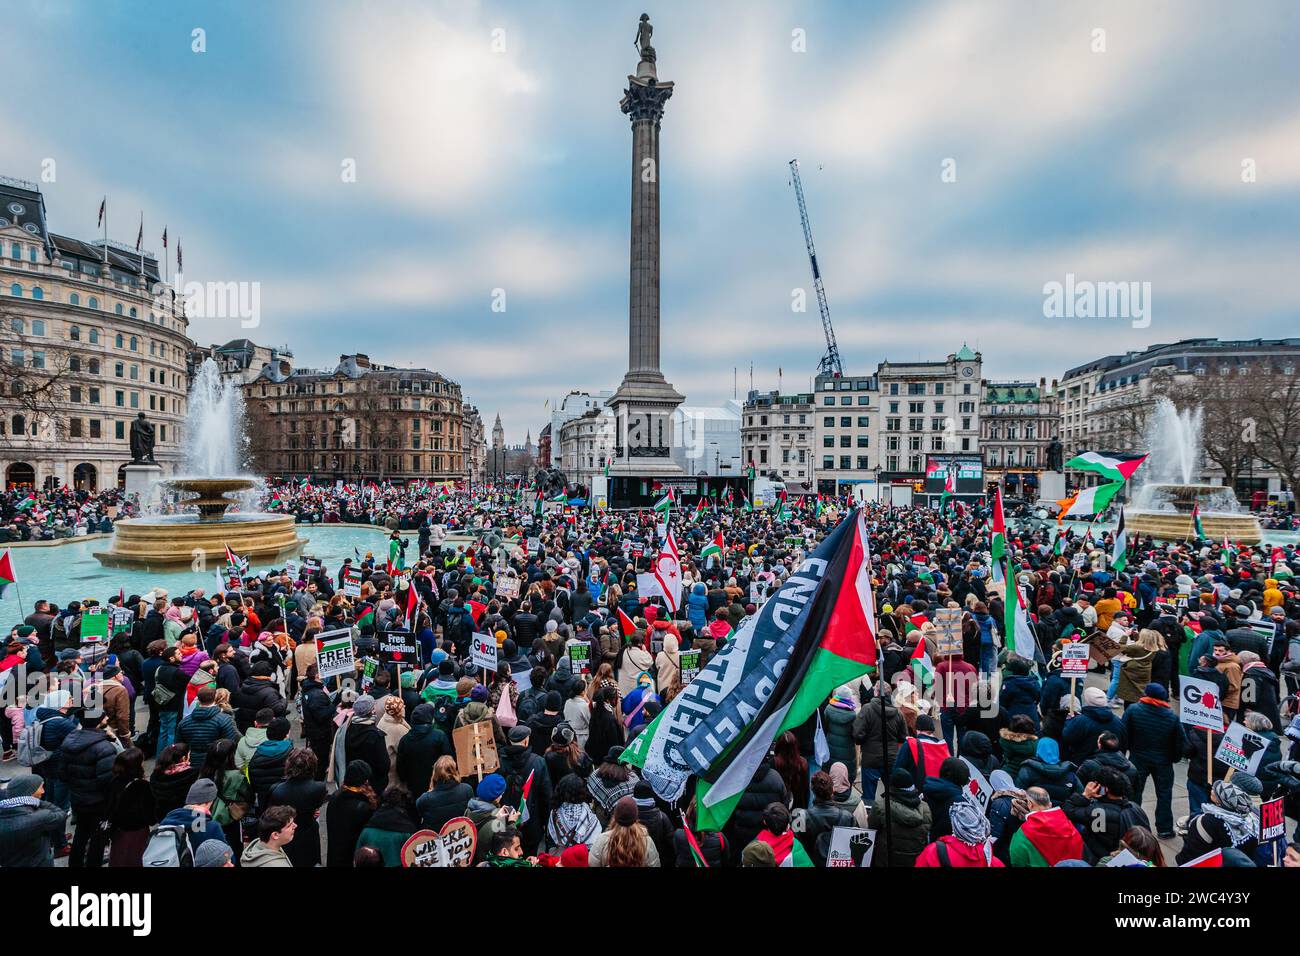 Große Menschenmassen versammeln sich auf dem Trafalgar Square zu einer Pro-Palästina-Kundgebung. Stockfoto